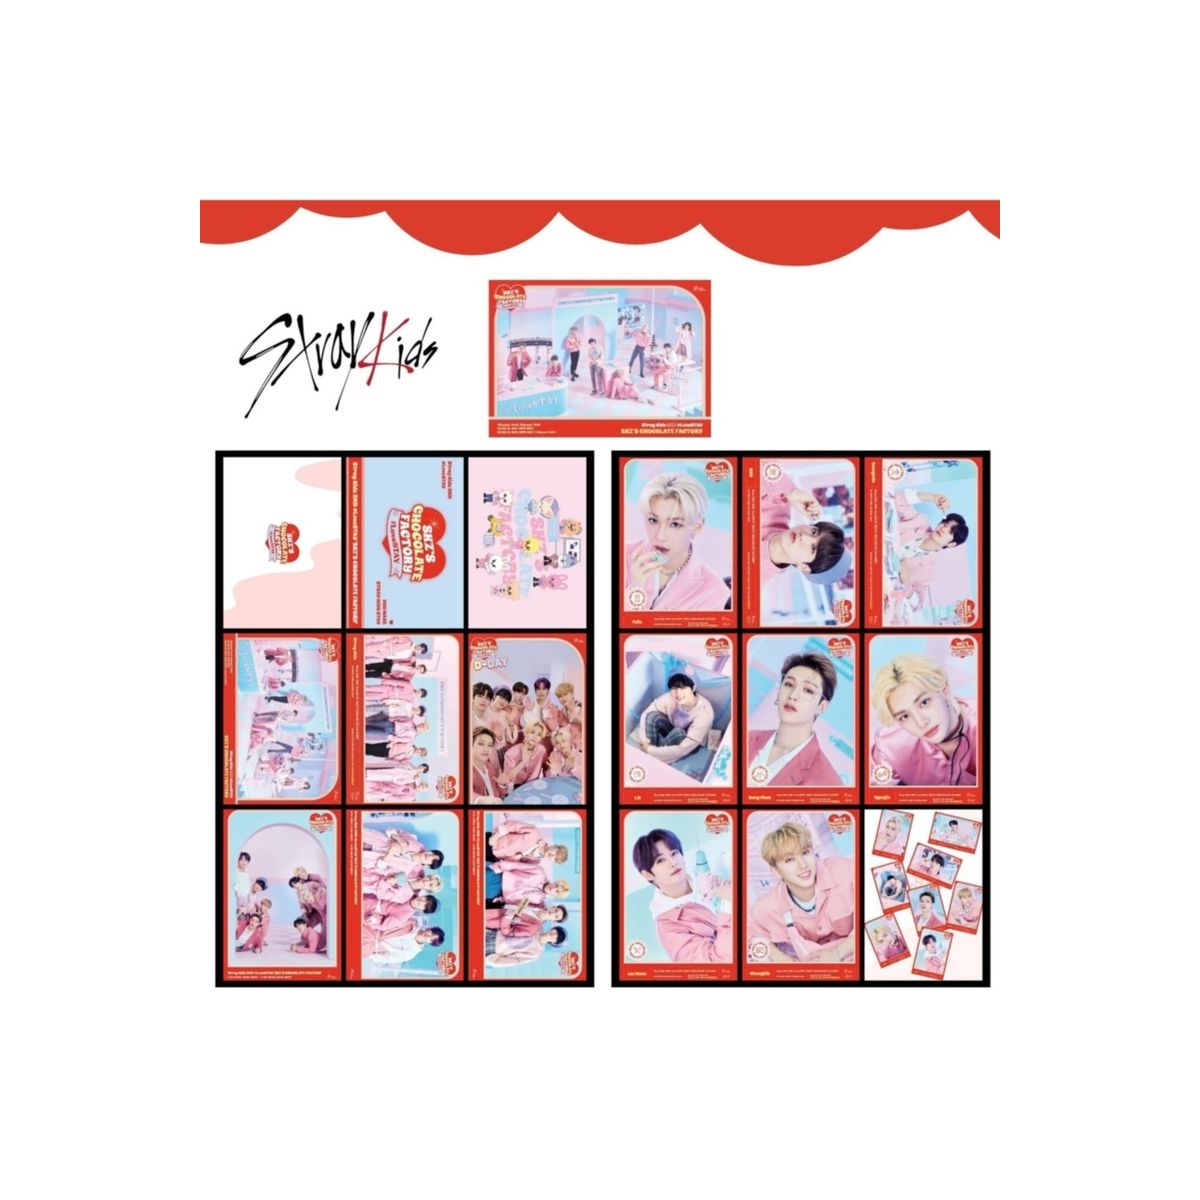 Kpop Dünyasi Monsta X ''Shape Of Love'' Photocard Set - Trendyol